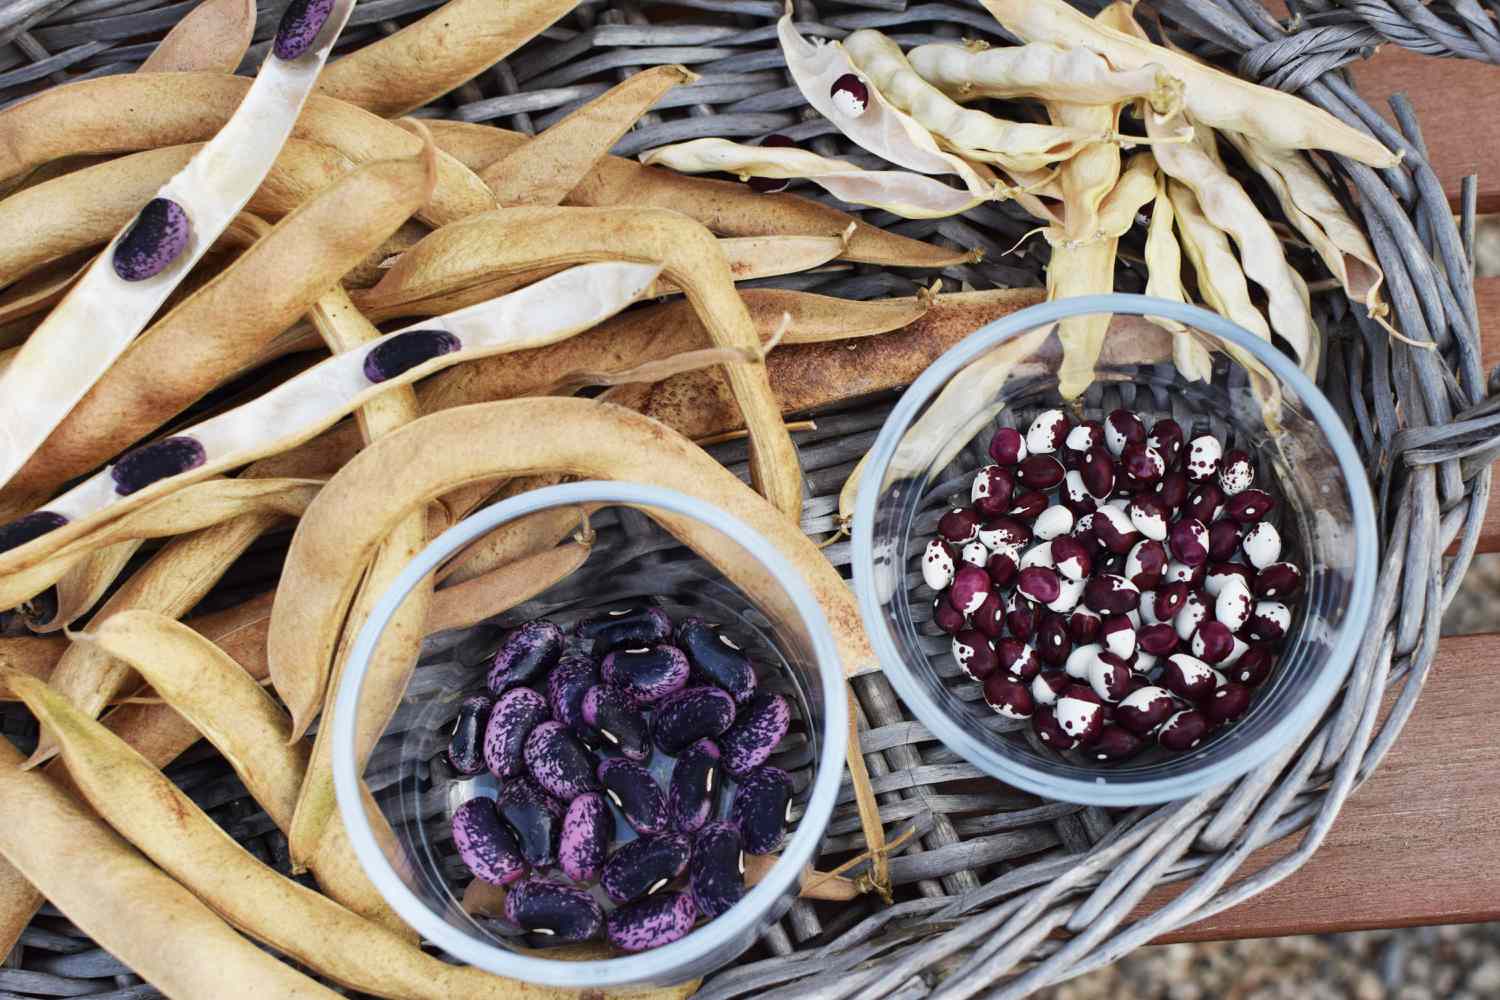 Graines de haricots violets, rouges et blancs séparées des haricots secs dans un panier rond